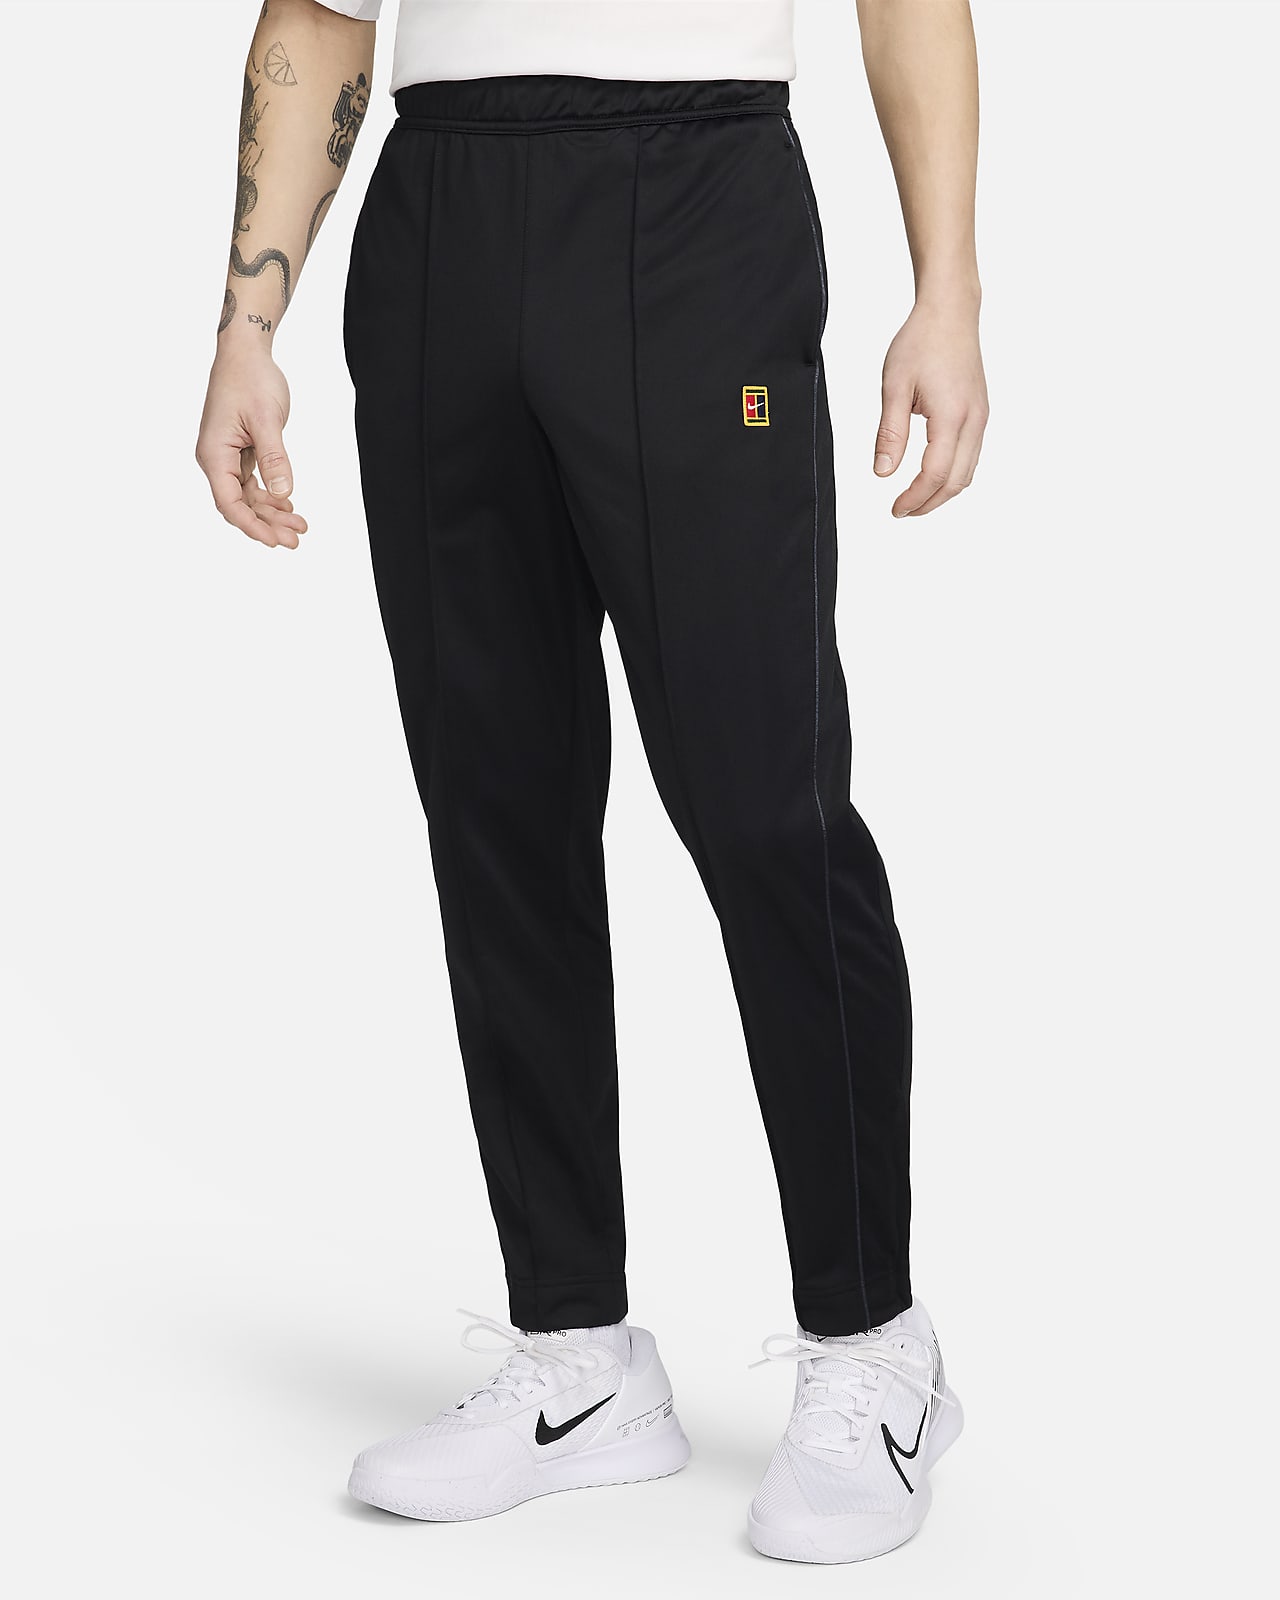 【ナイキ公式】コート メンズ テニスパンツ ブラック メンズ M NikeCourt Men's Tennis PANTS